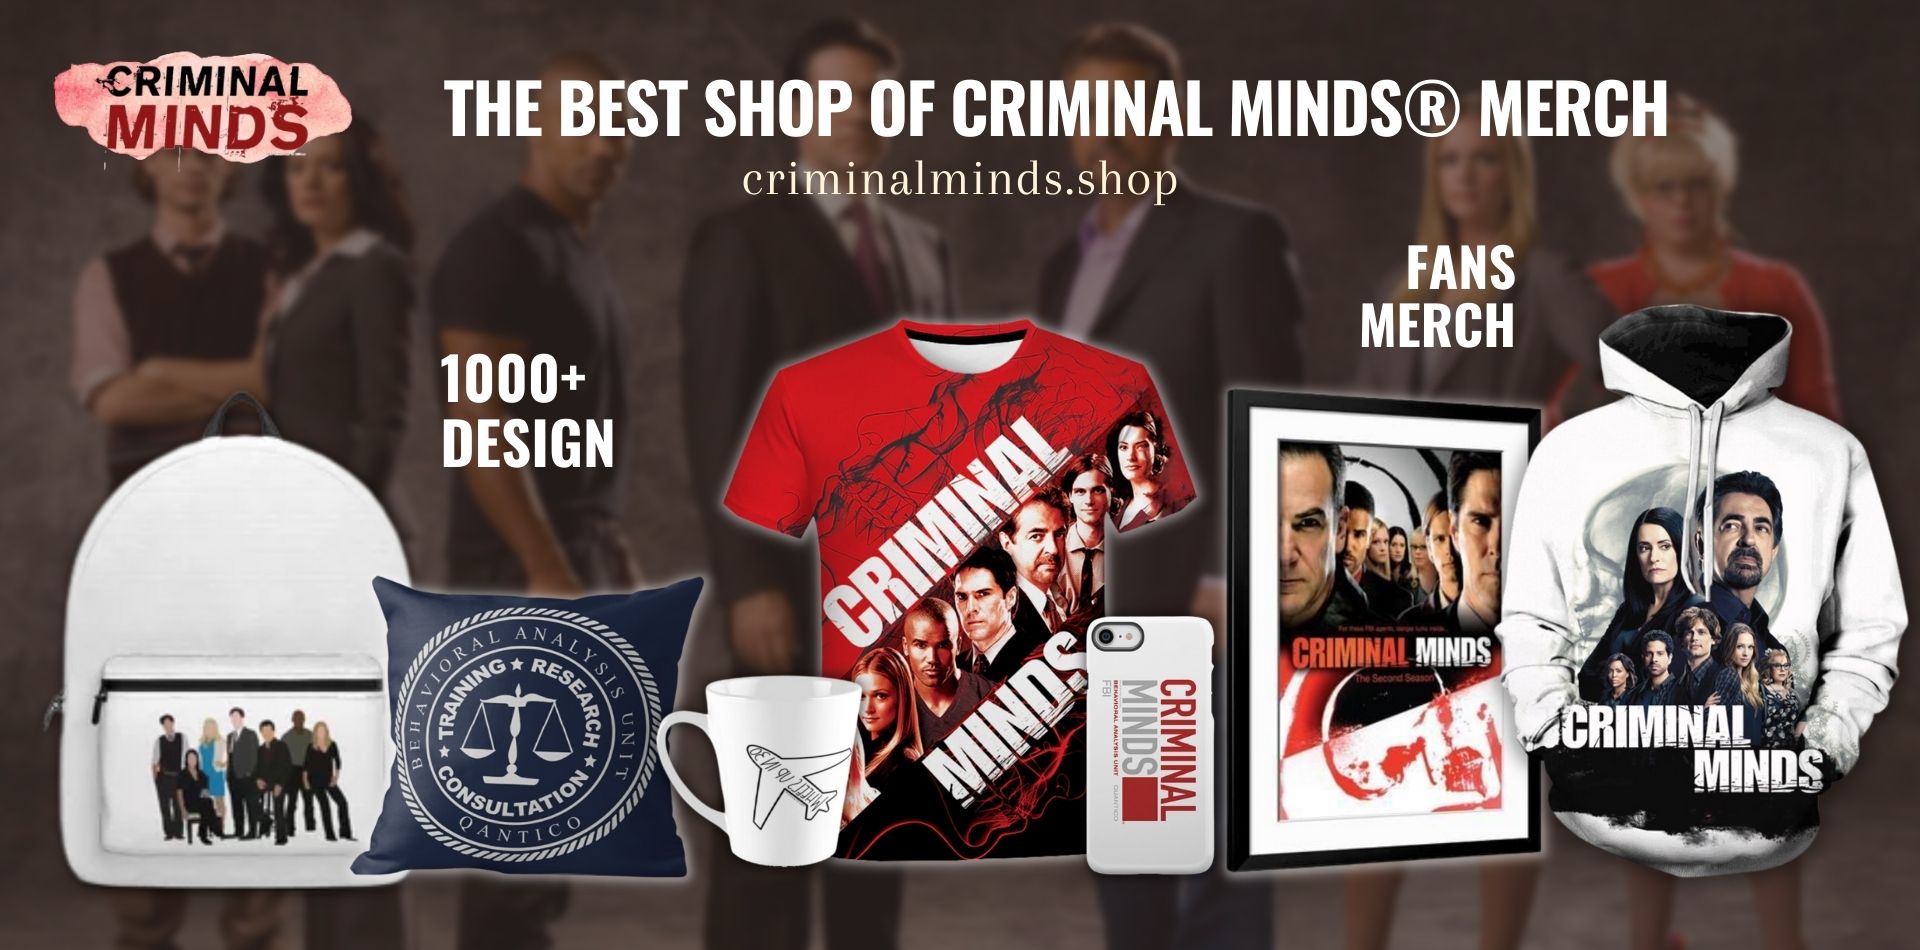 Criminal Minds Shop Web Banner - Criminal Minds Shop